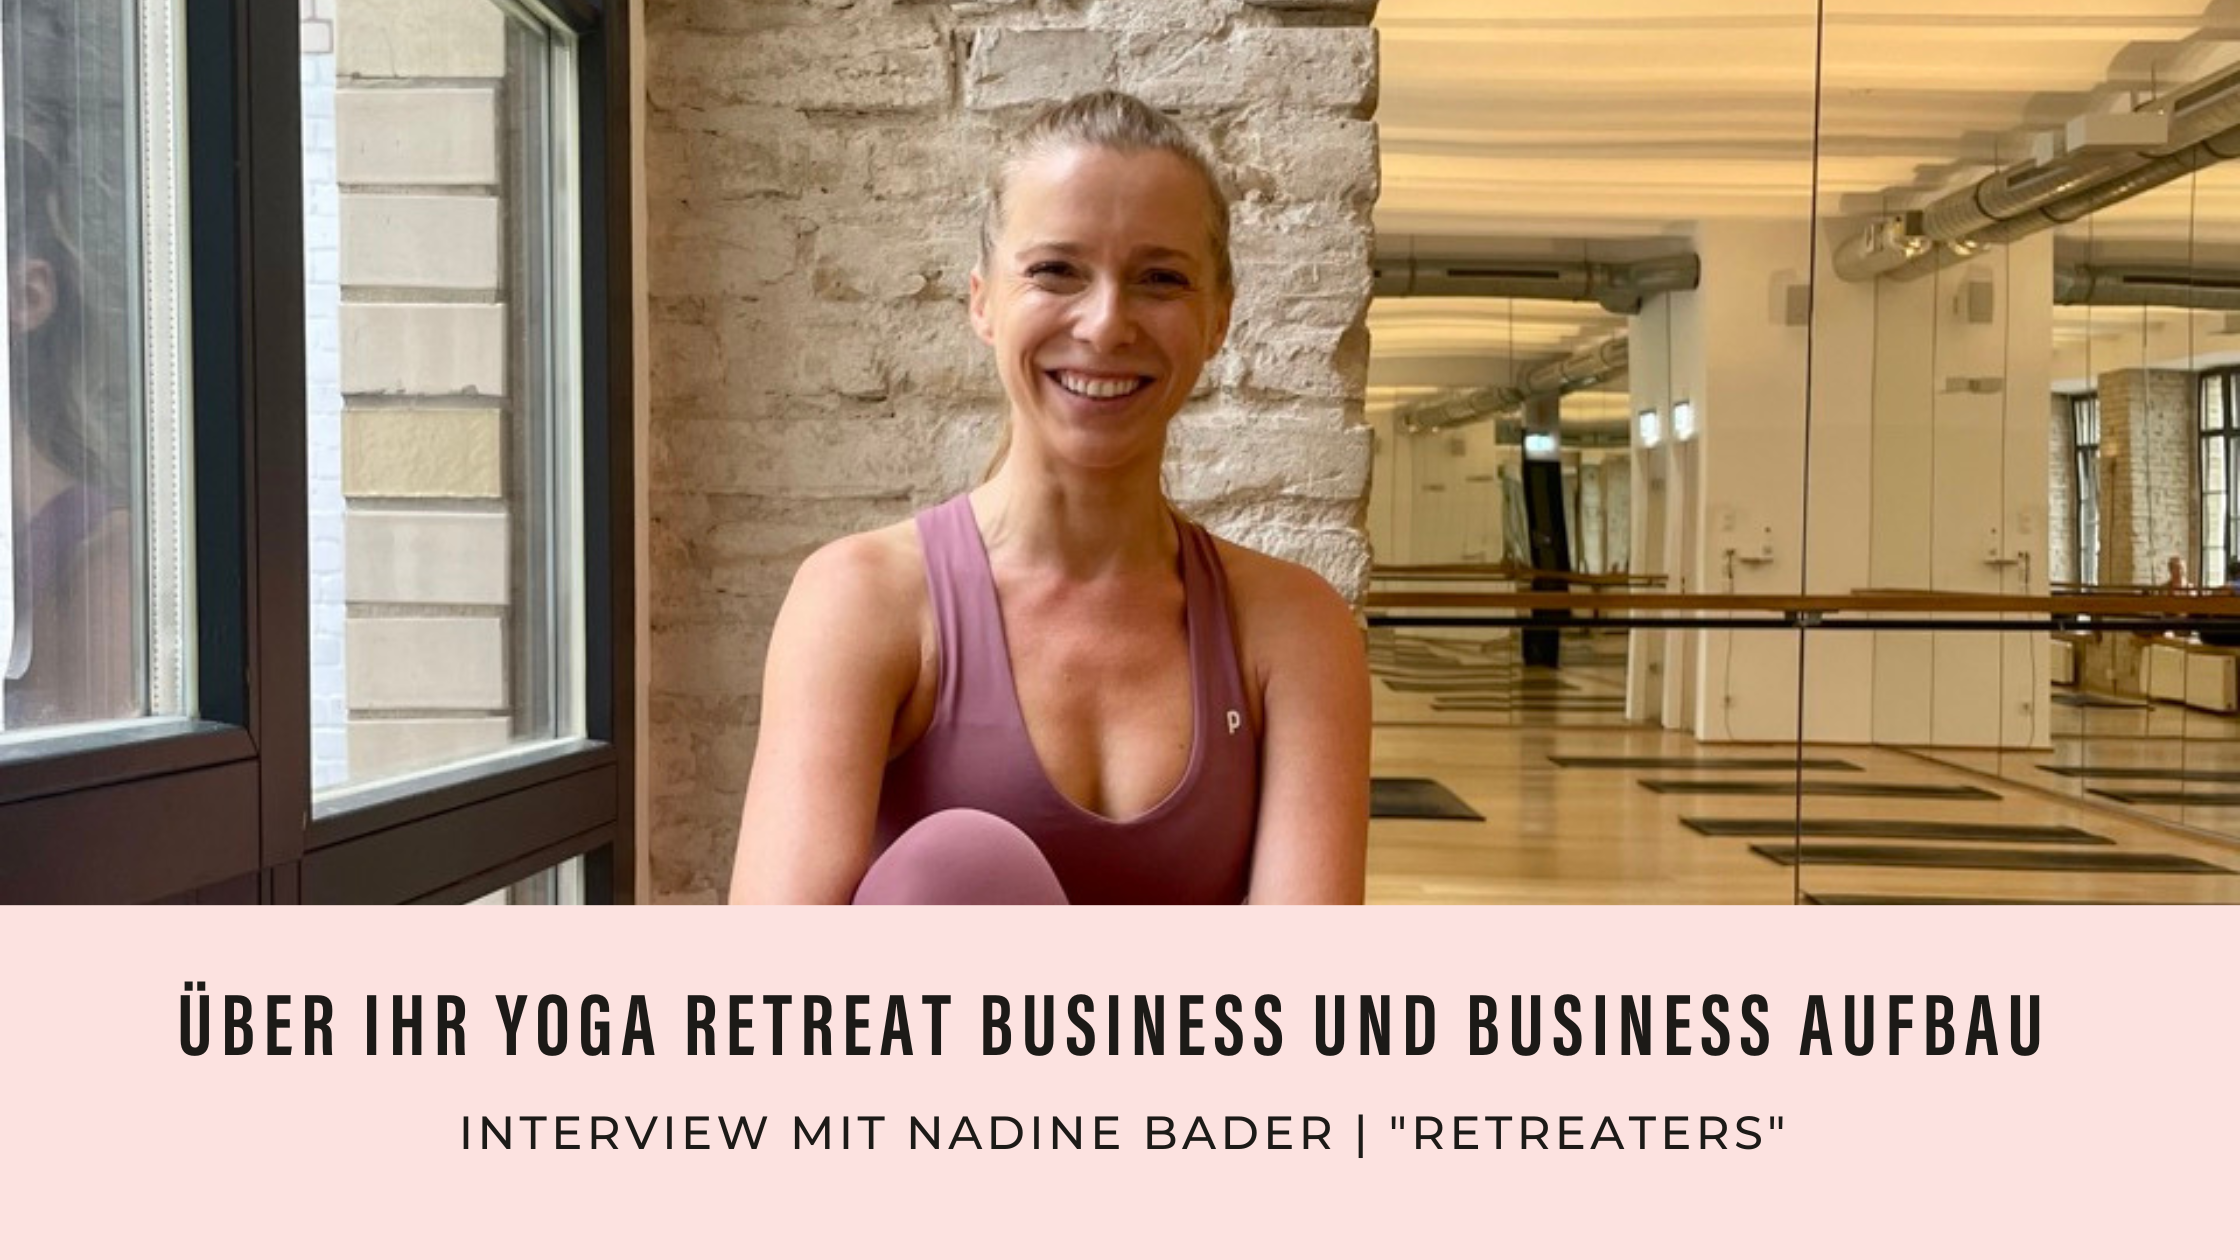 Zu sehen ist Nadine Bader in einem lilanen Yoga Outfit.